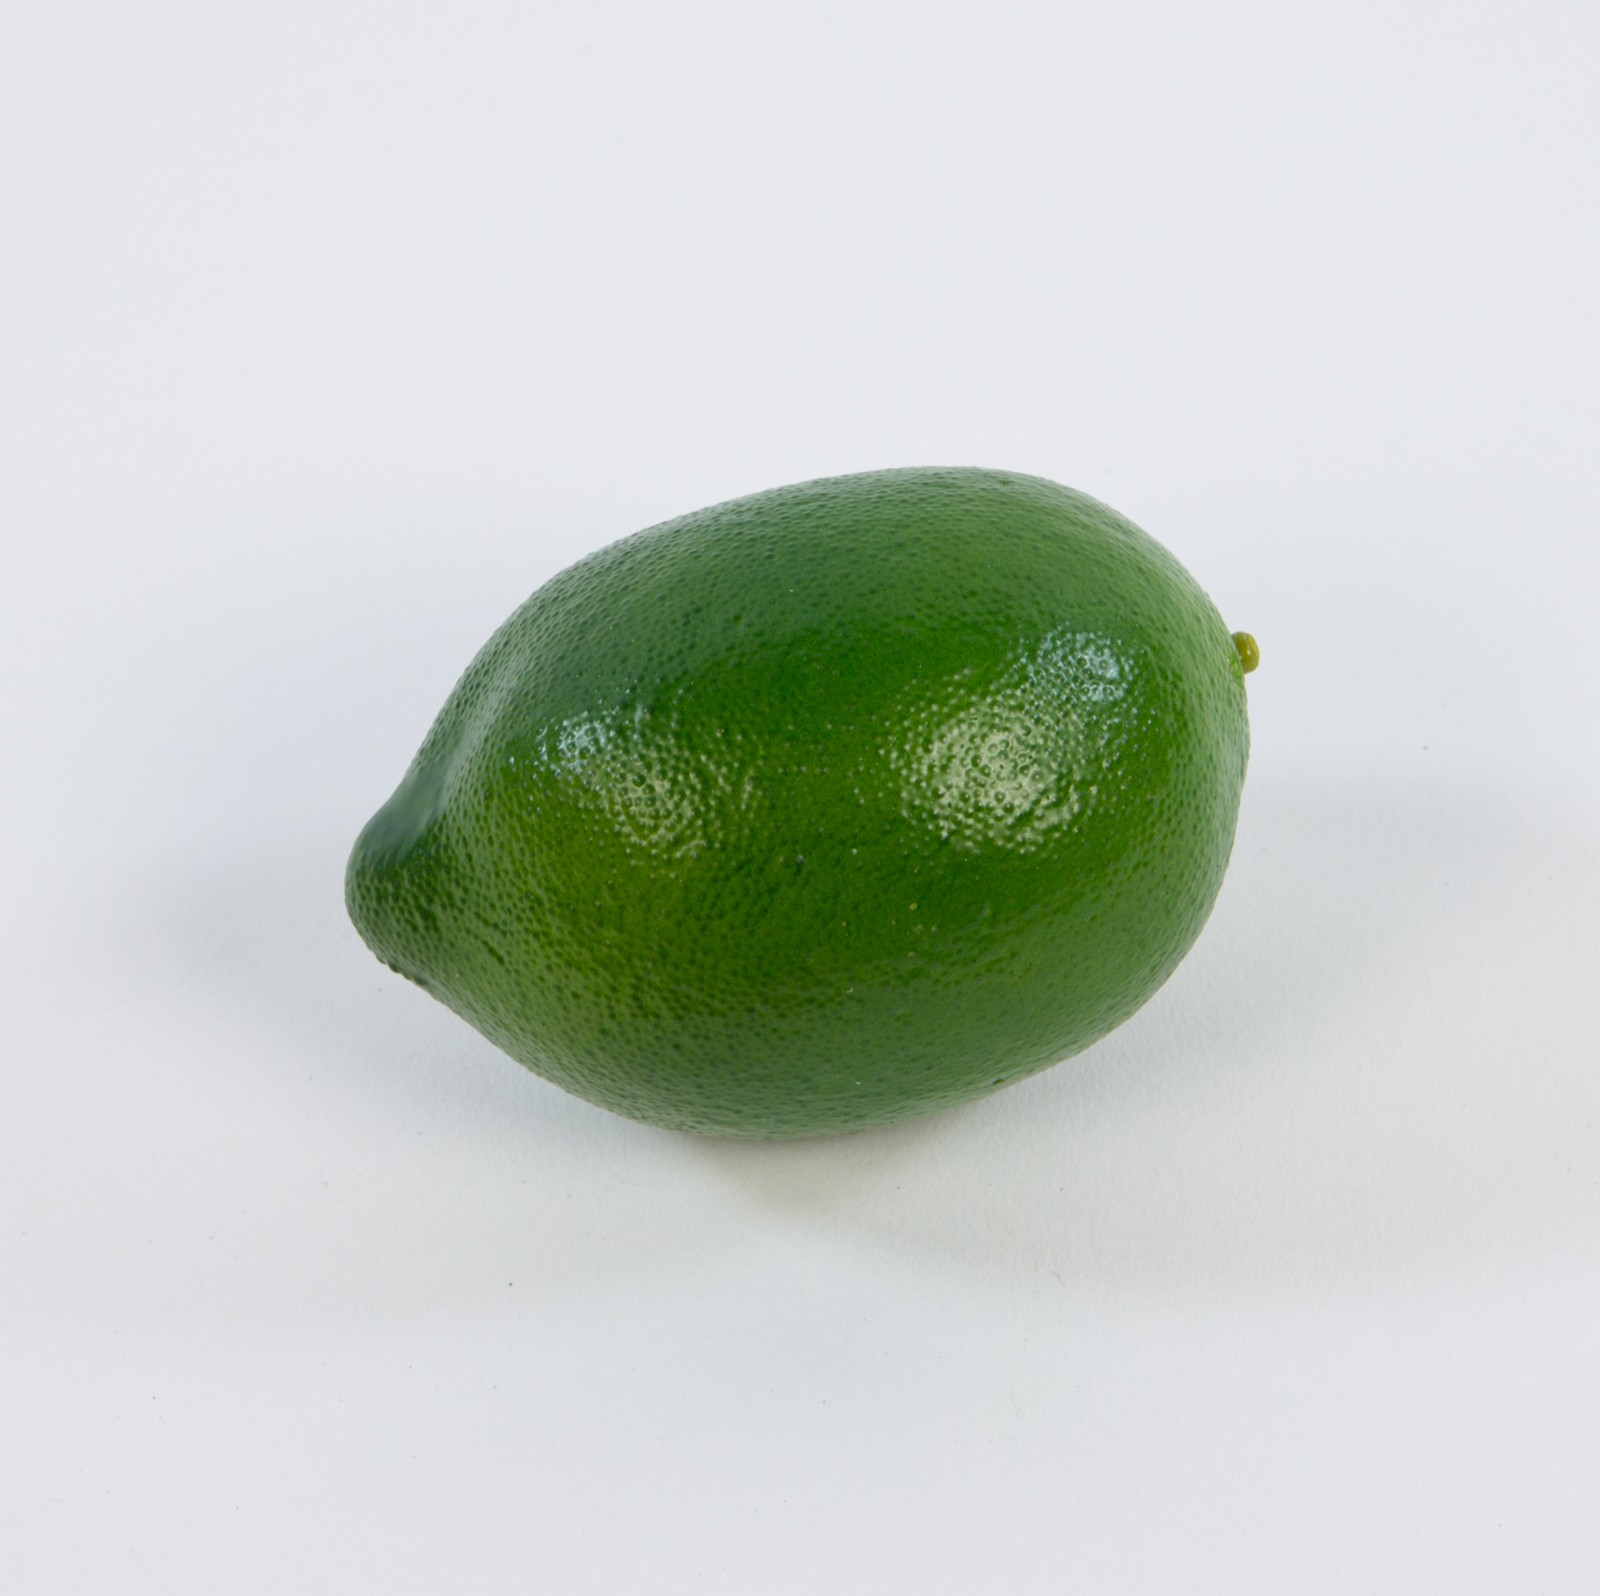 Künstliche Limone / Limette 8x6cm DP Dekoobst Kunstobst Künstliches Obst